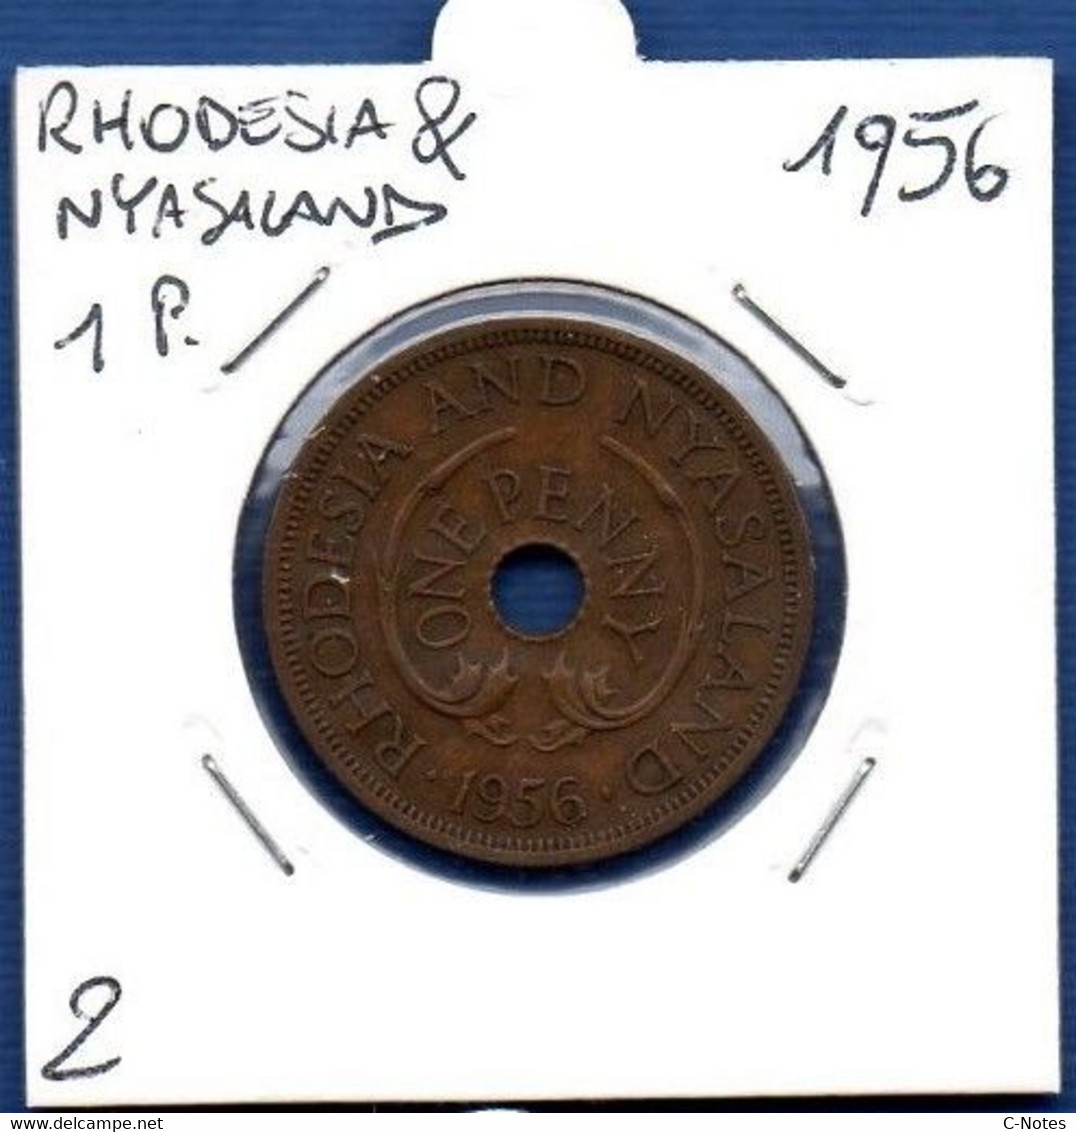 RHODESIA AND NYASALAND - 1 Penny 1956  -  See Photos - Km 2 - Rhodesia